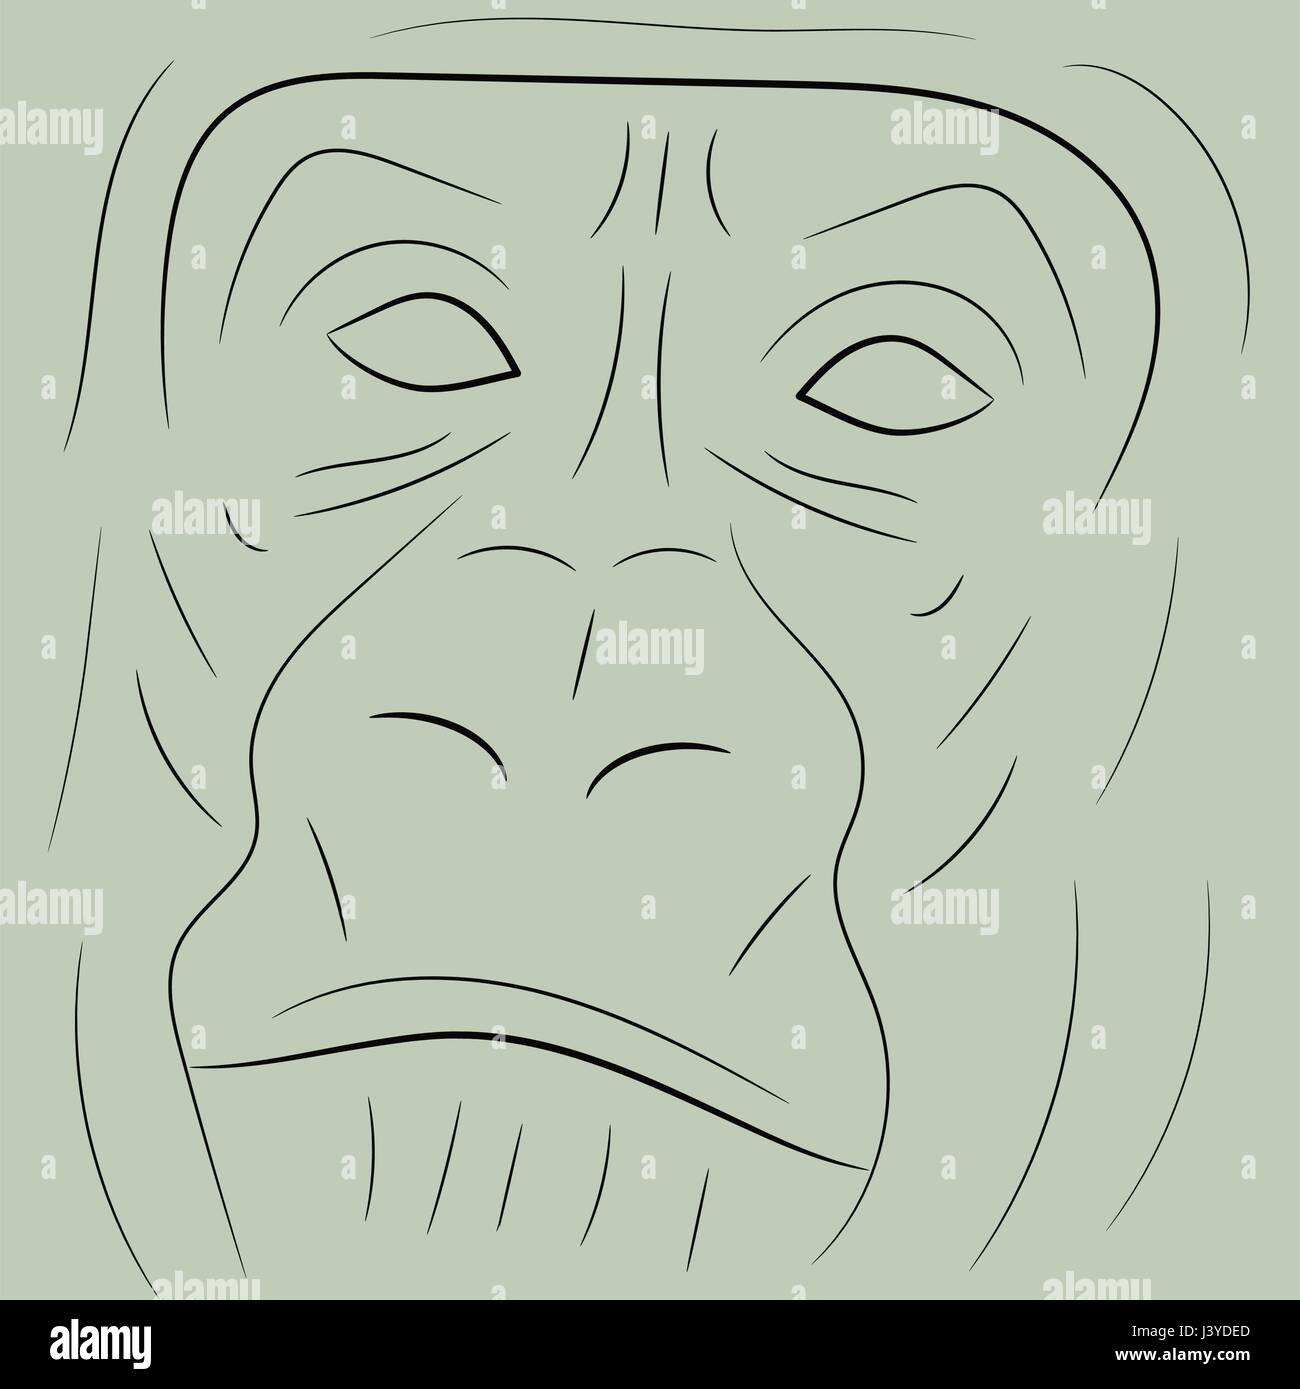 Simple gorilla portrait sketch or icon Stock Vector